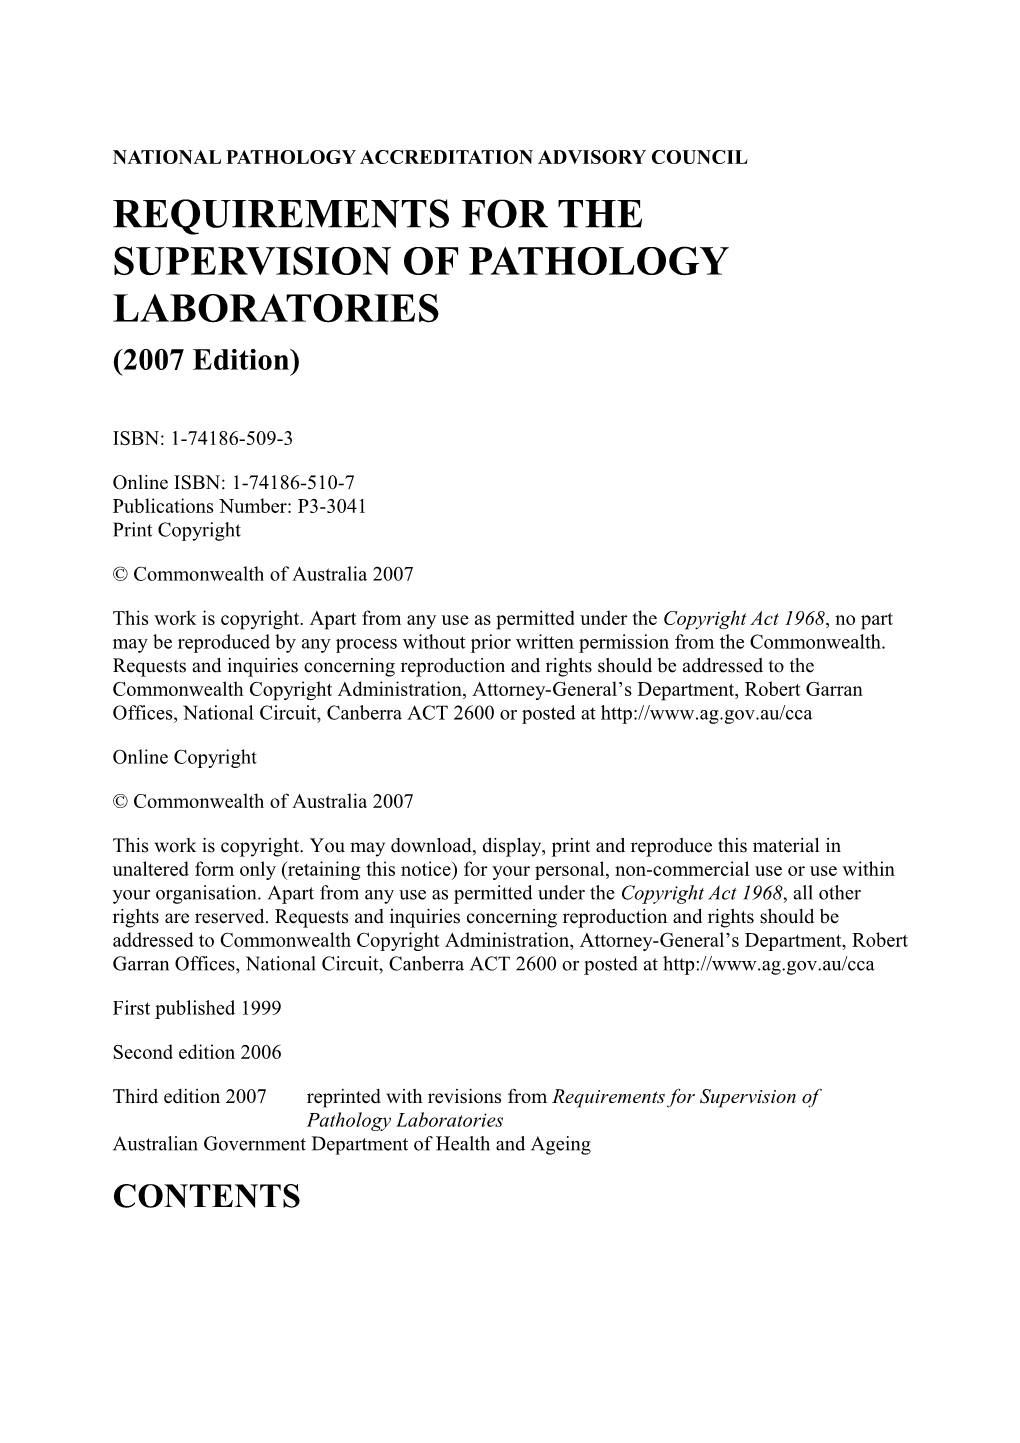 National Pathology Accreditation Advisory Council